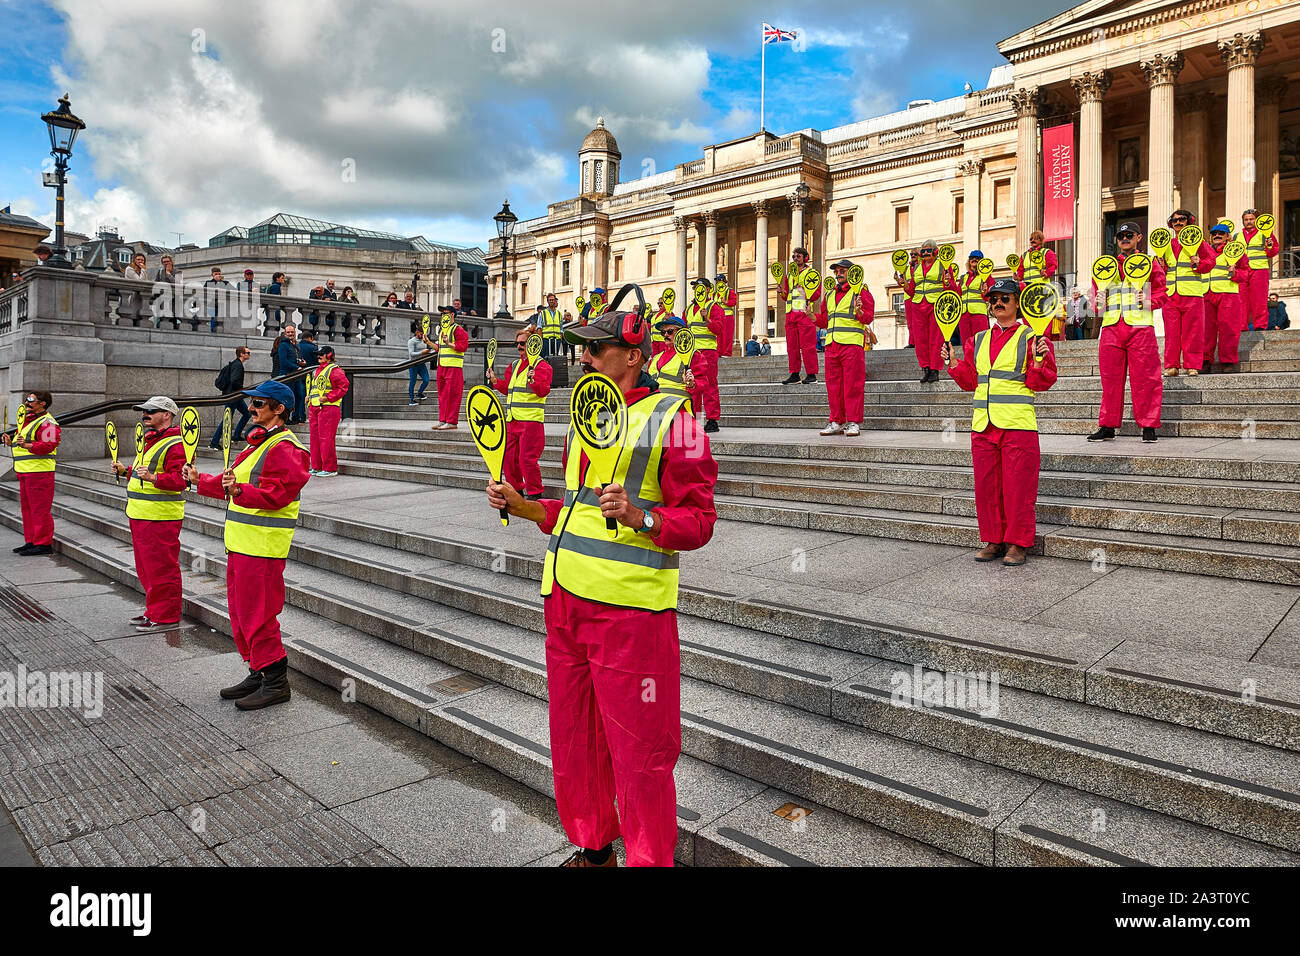 Londres, Reino Unido - Oct 9, 2019: activistas ambientales de la extinción rebelión vestidos como trabajadores de aterrizaje en Trafalgar Square para protestar contra los viajes aéreos. Foto de stock